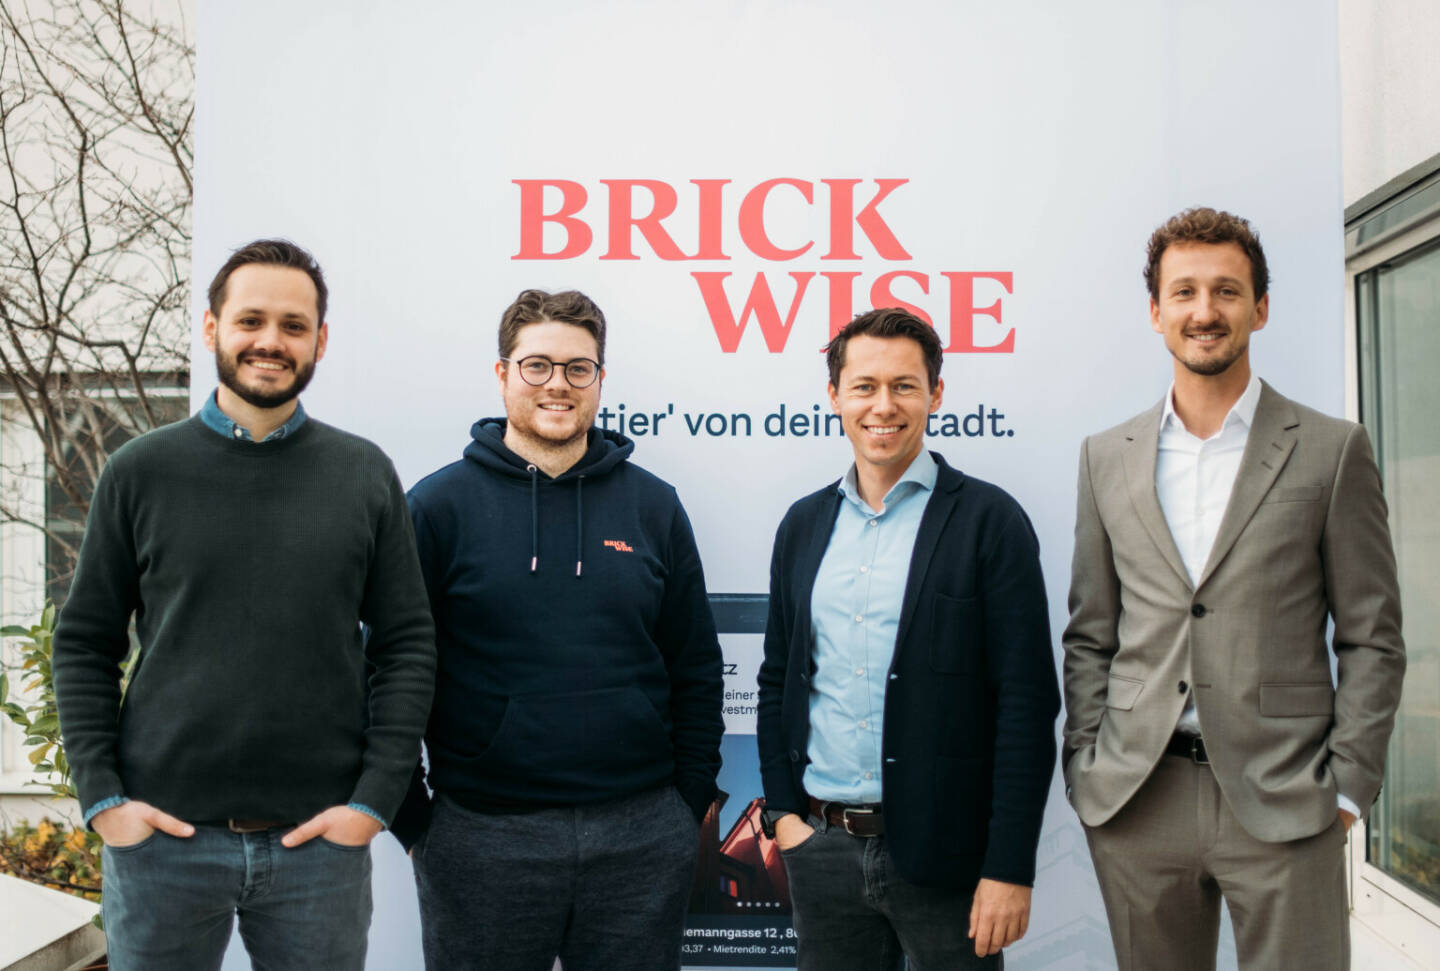 Brickwise Investment GmbH: Ende des Jahres waren bereits neun Wohn- und Gewerbeimmobilien aus Österreich auf der Plattform gelistet. Insgesamt wurden mehr als 23.000 digitalisierte Anteile mit einem Gesamttransaktionswert von 5,5 Millionen Euro ge- und verkauft. Die Zahl der registrierten User:innen stieg in den ersten zwölf Monaten auf über 20.000 an., Gründerteam von Brickwise - v. li.: Marco Neumayer, Valentin Perkonigg, Michael Murg, Klaus Pateter; Credit: Vicky Posch